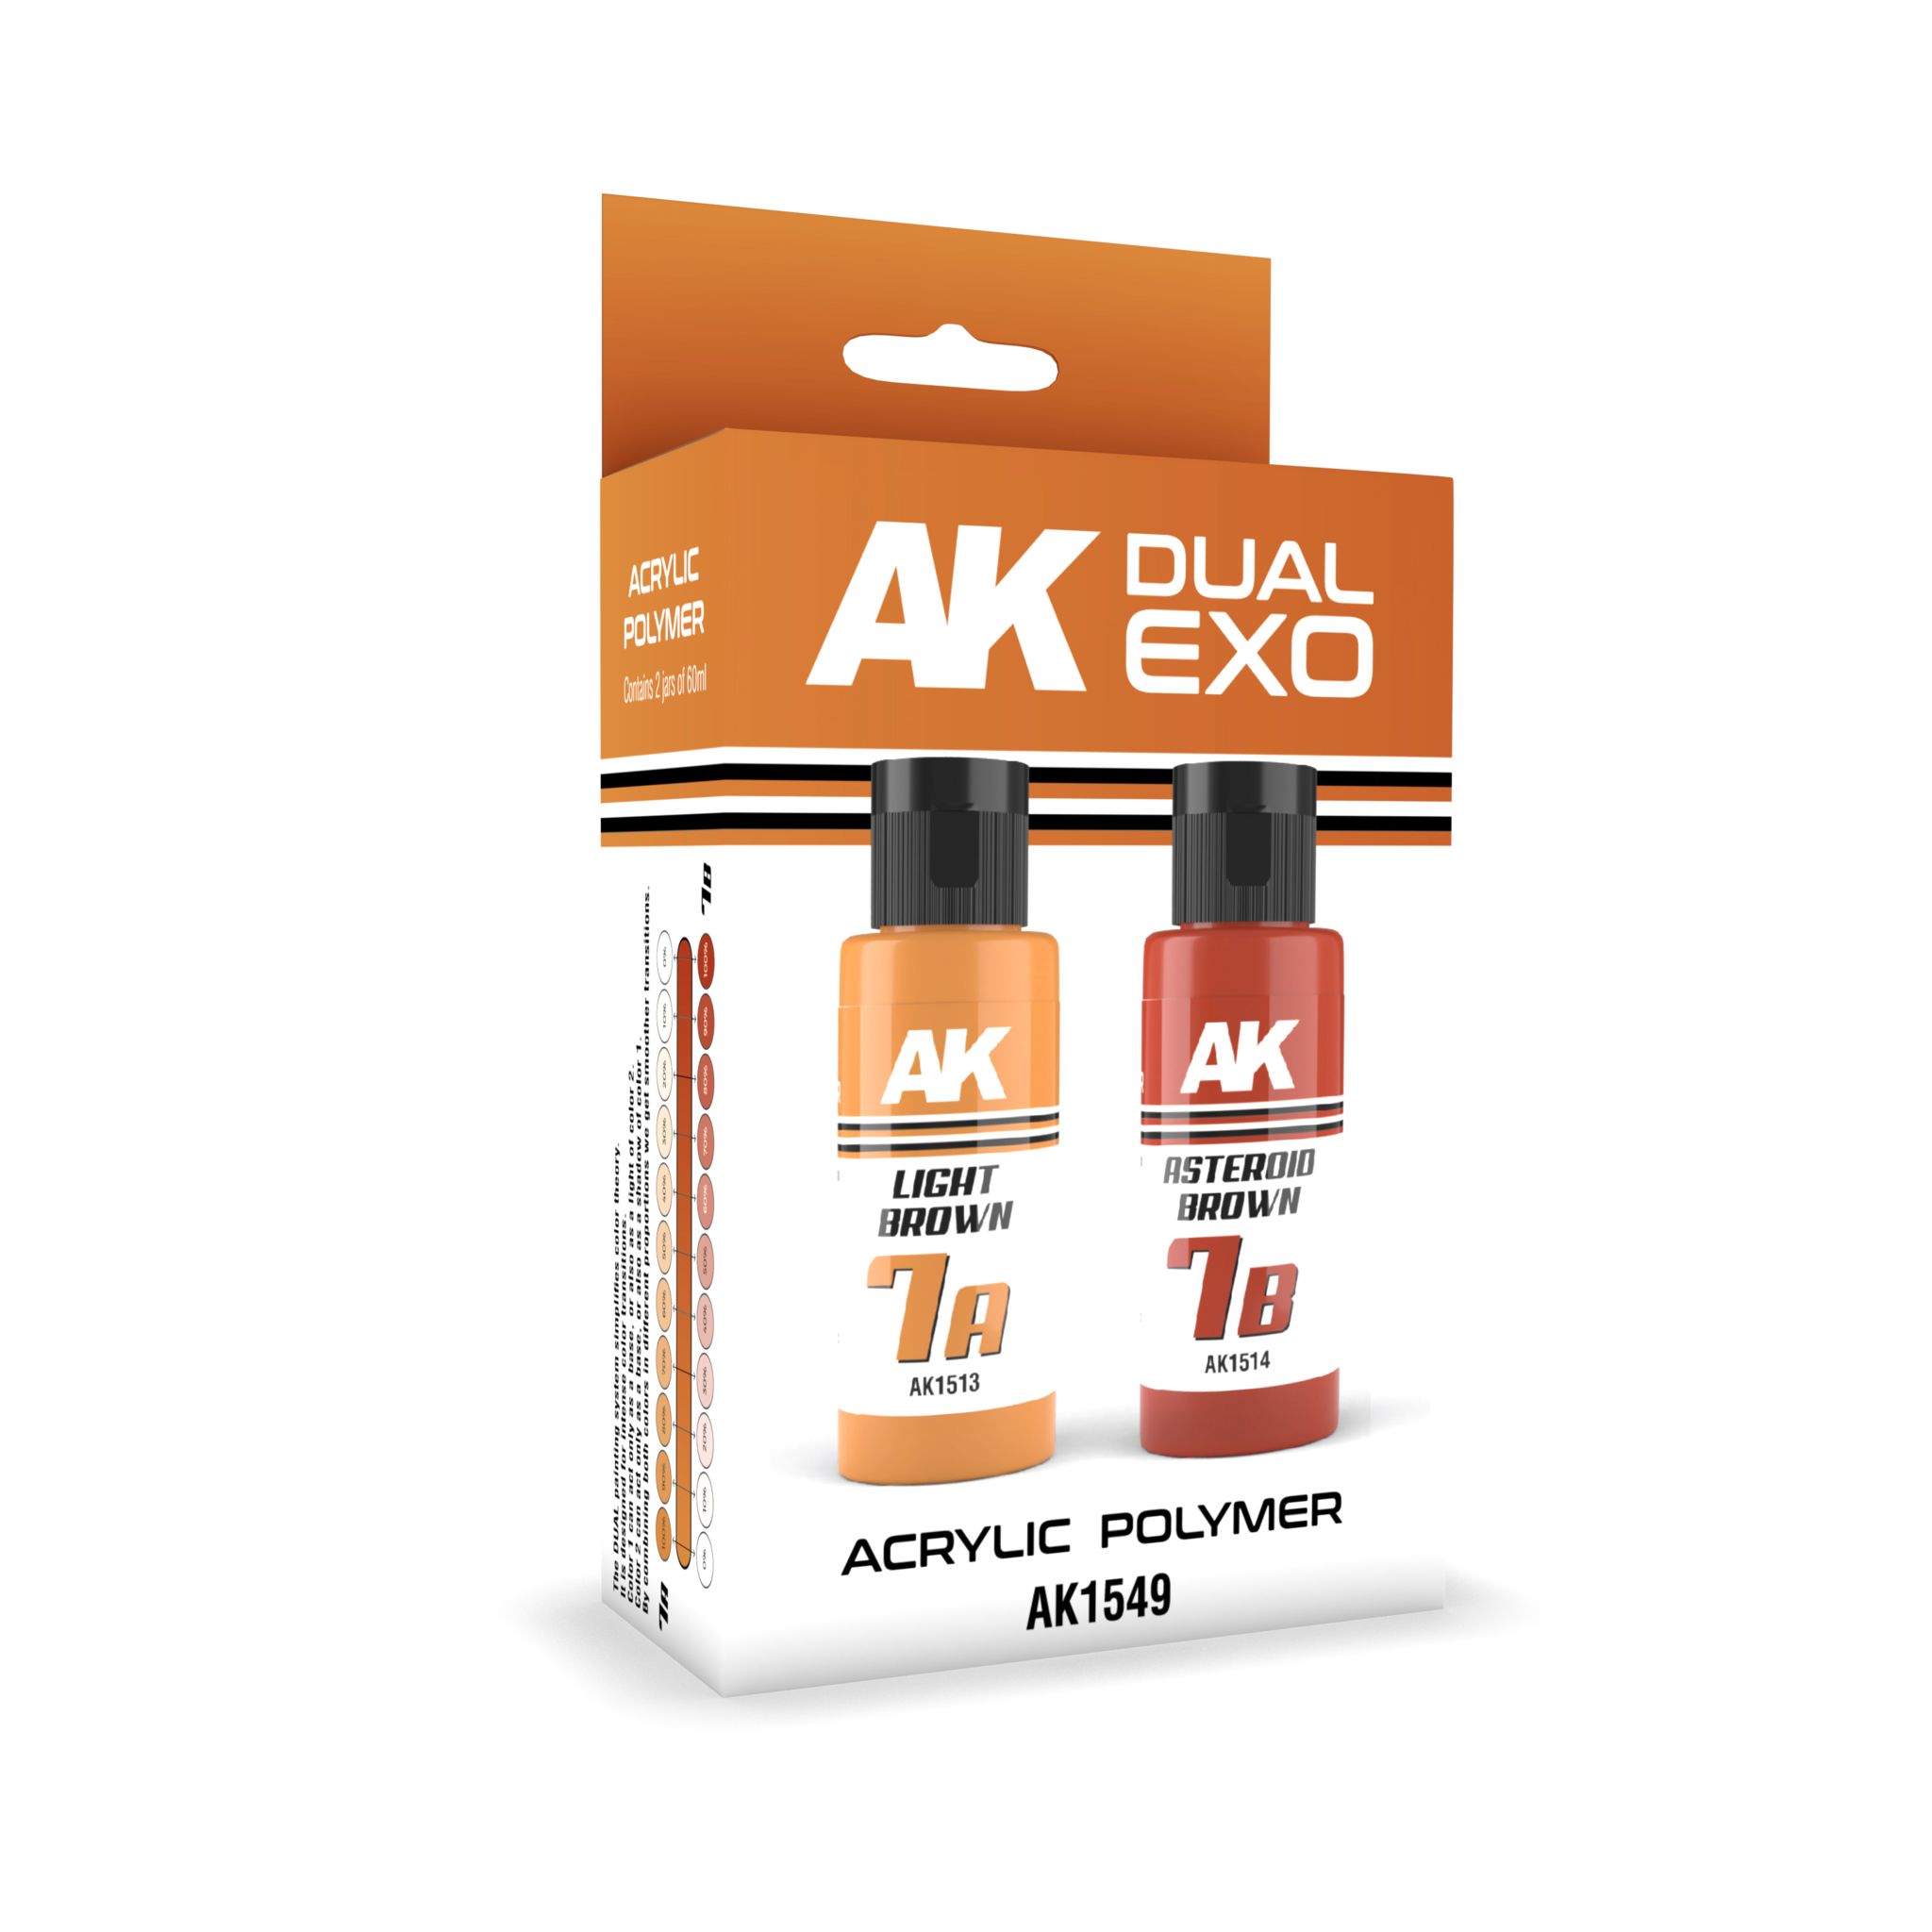 AK-Interactive Light Brown & Asteroid Brown Dual Exo Set - 2 x 60ml - AK-Interactive - AK-1549